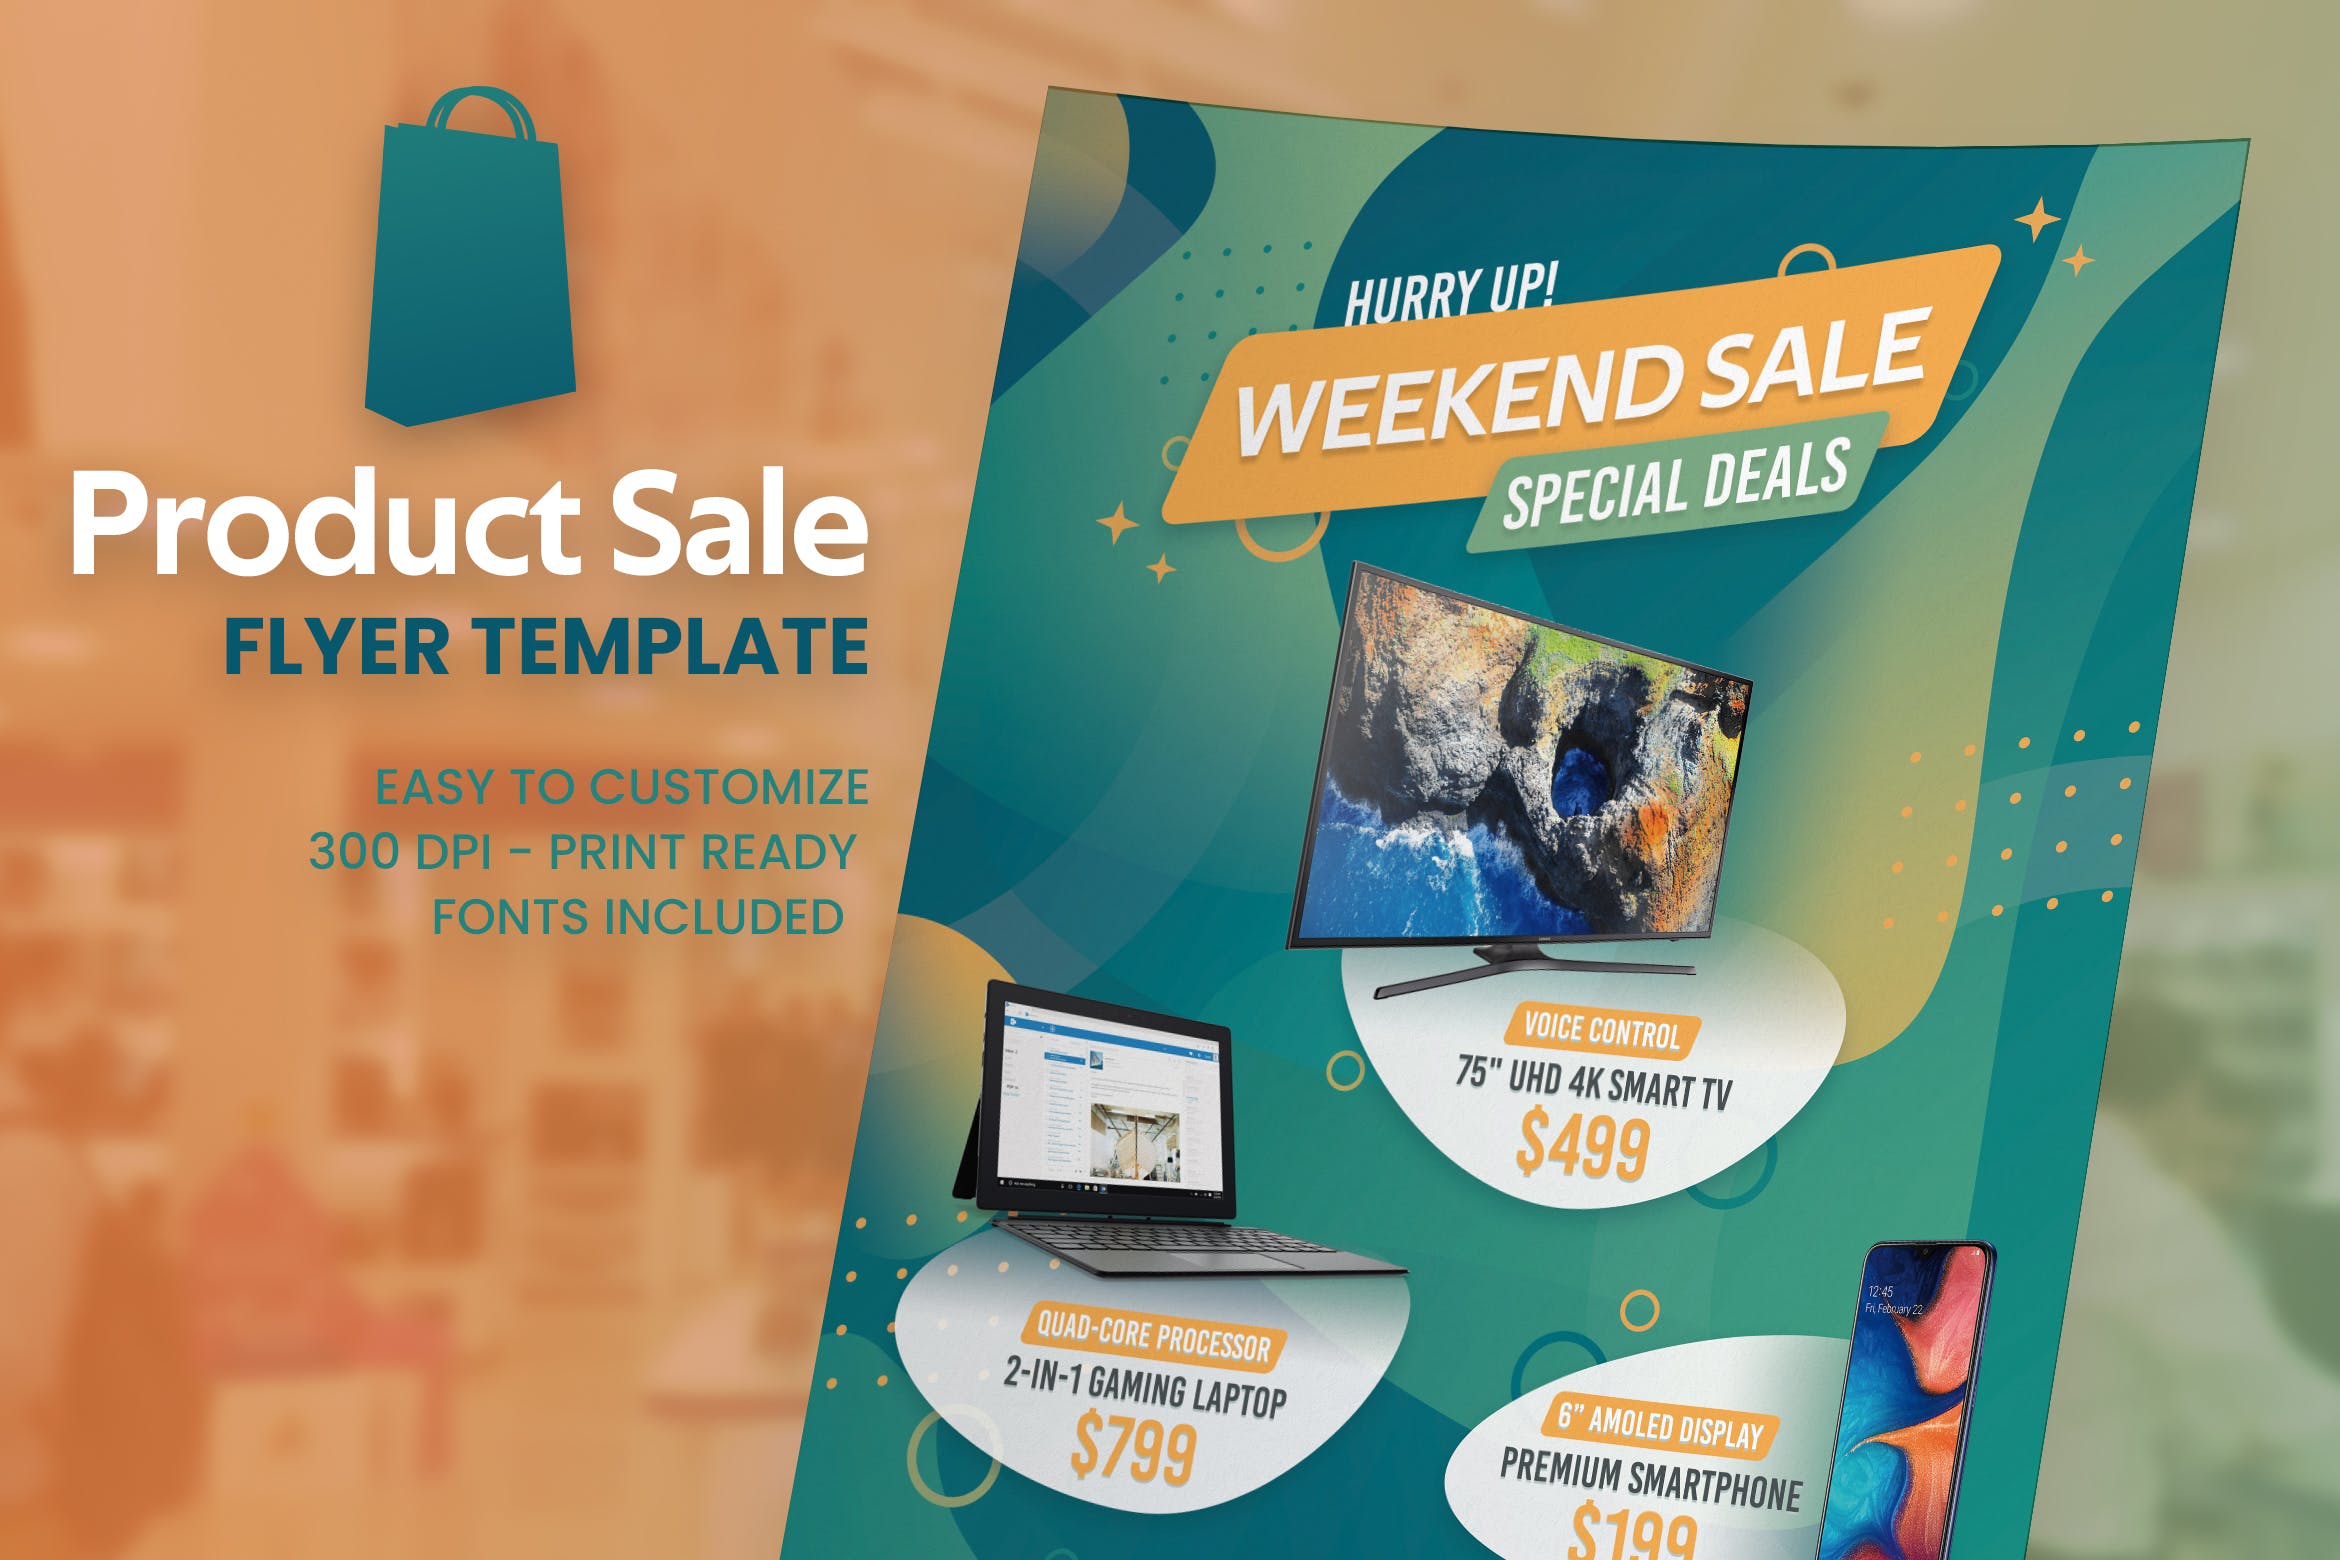 大型卖场商品促销海报设计PSD模板 Product Sale Flyer插图